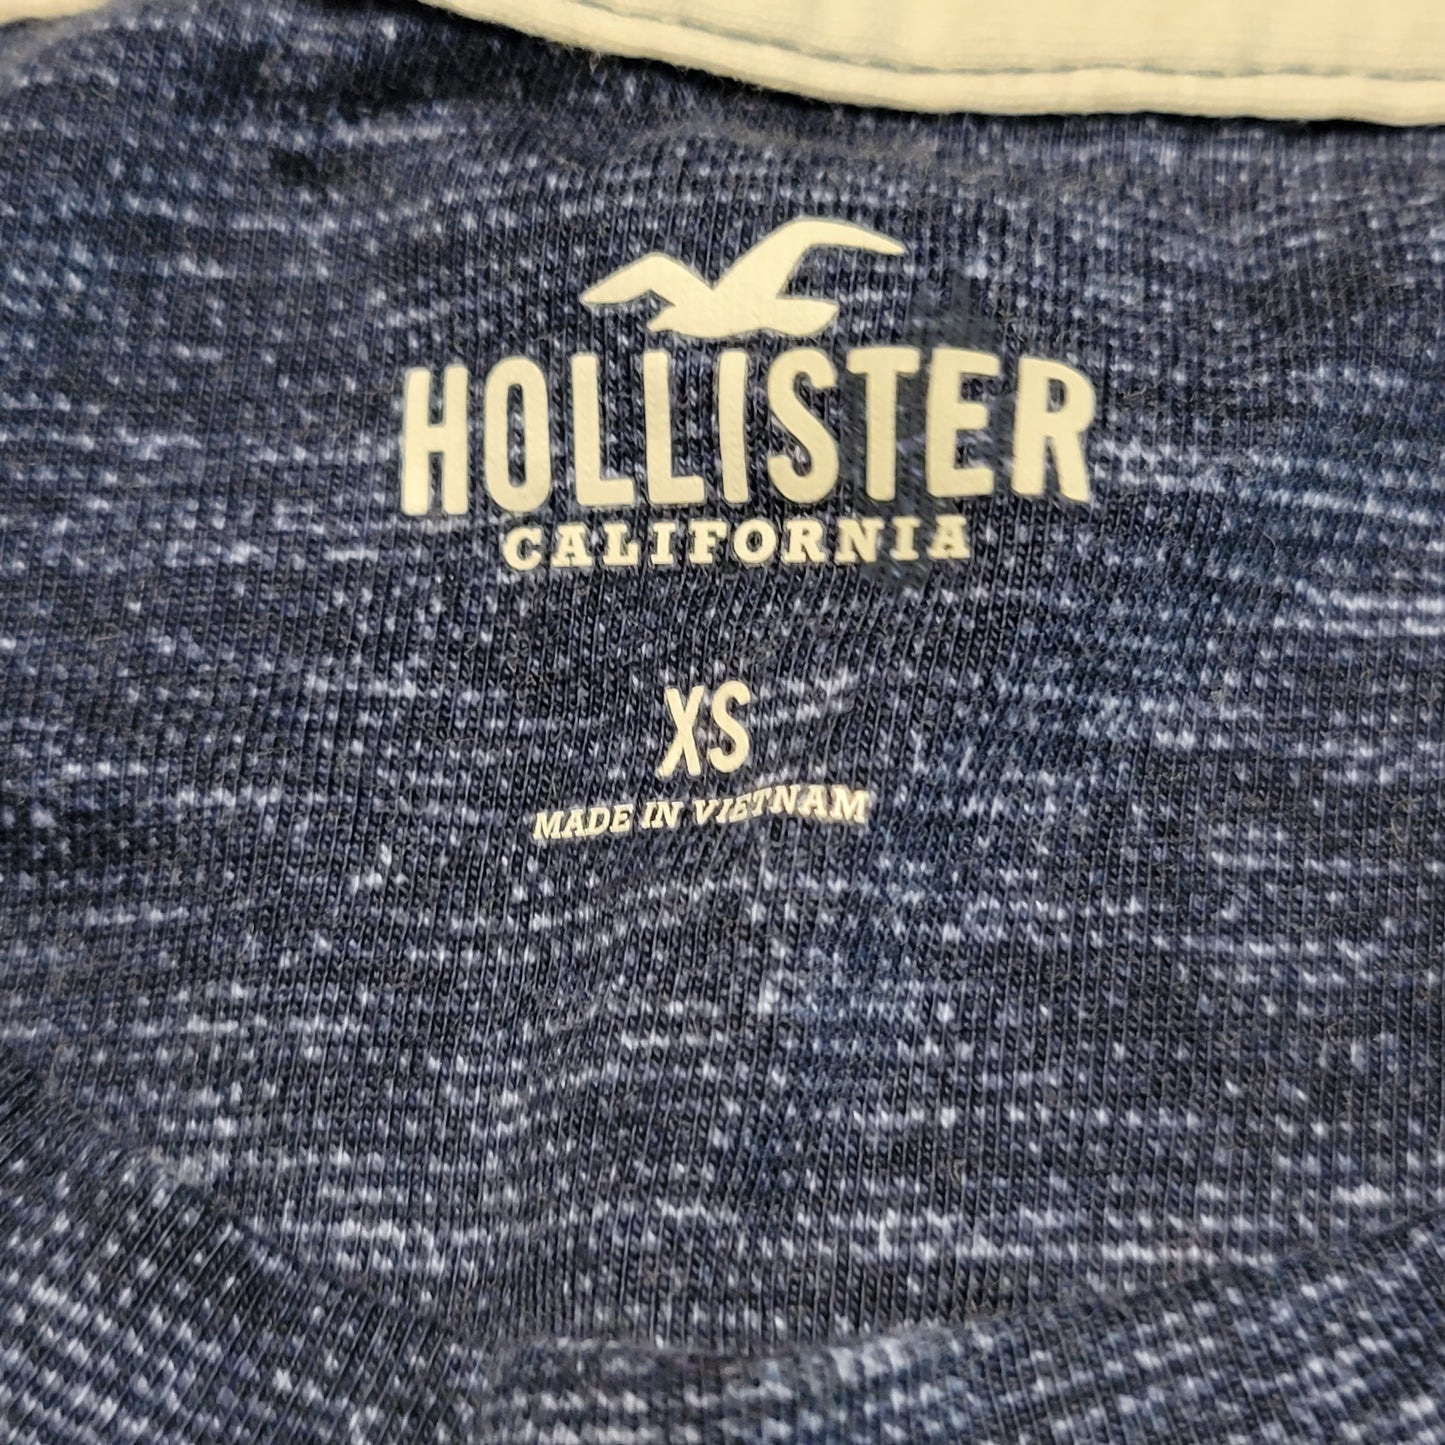 Women's Extra Small (XS) Hollister Blue Long Sleeve Shirt